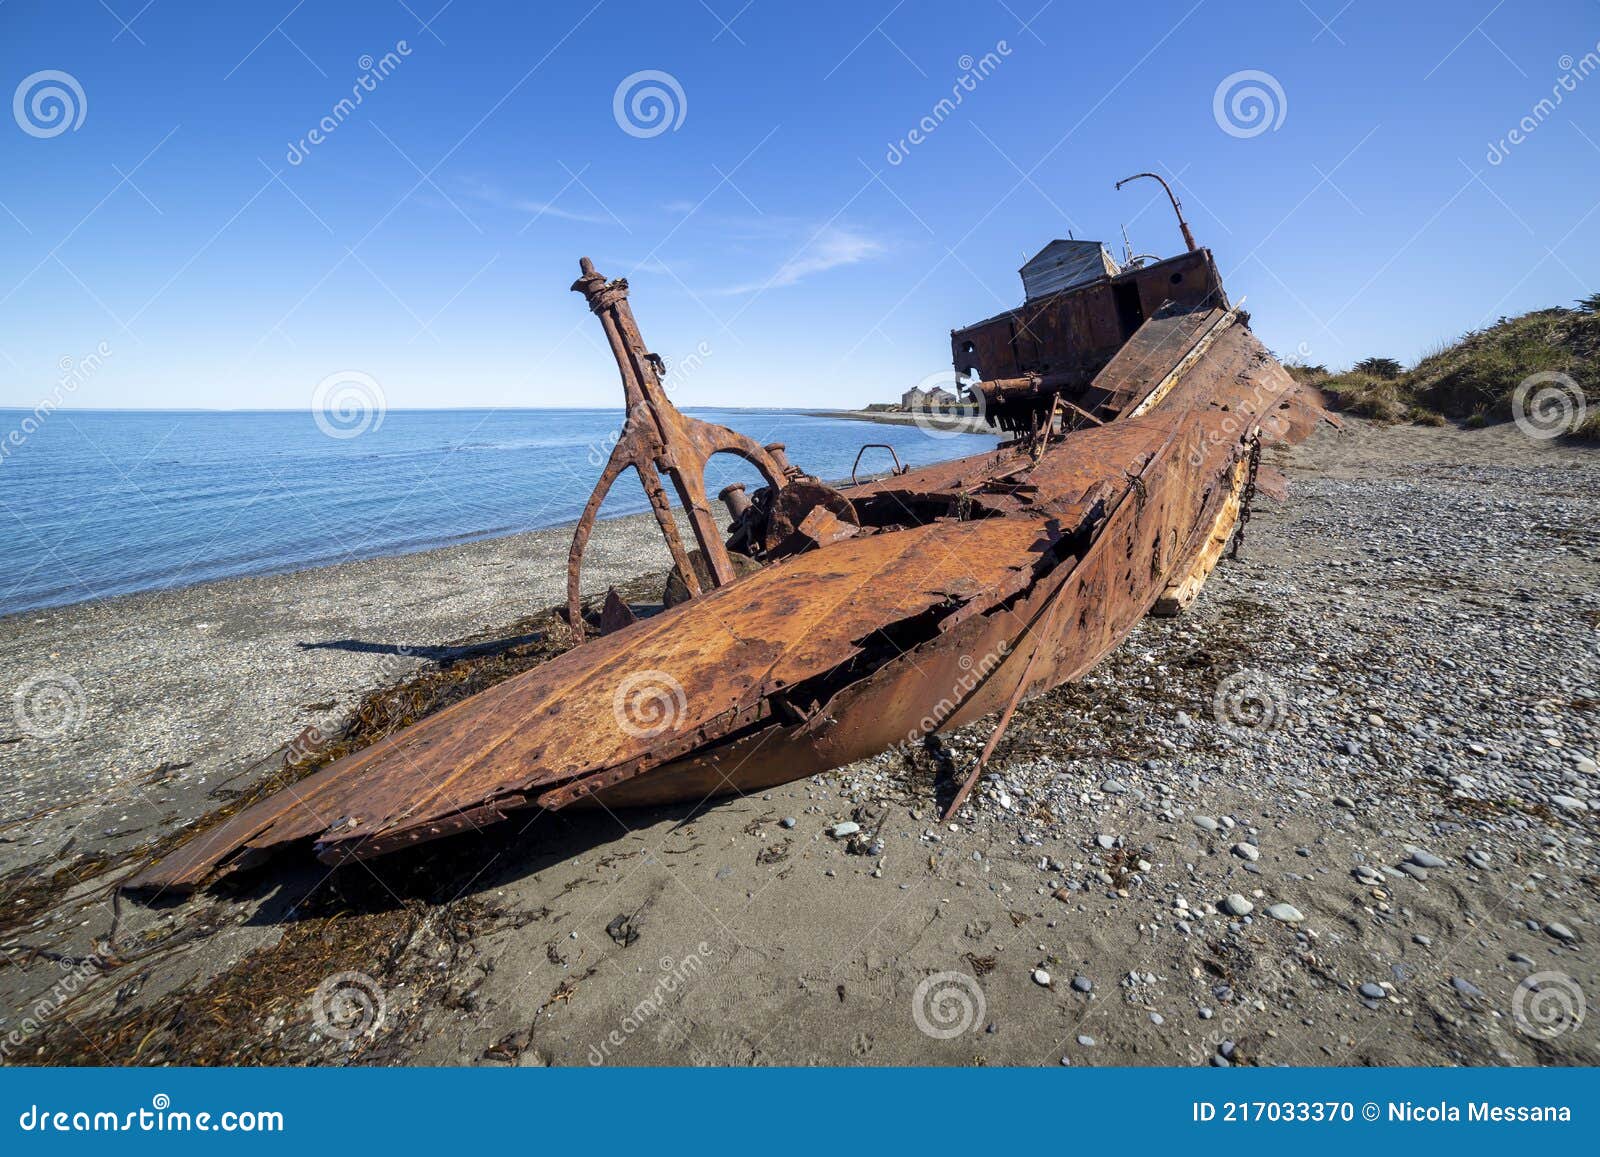 wreckages on san gregorio beach, strait of magellan, chile